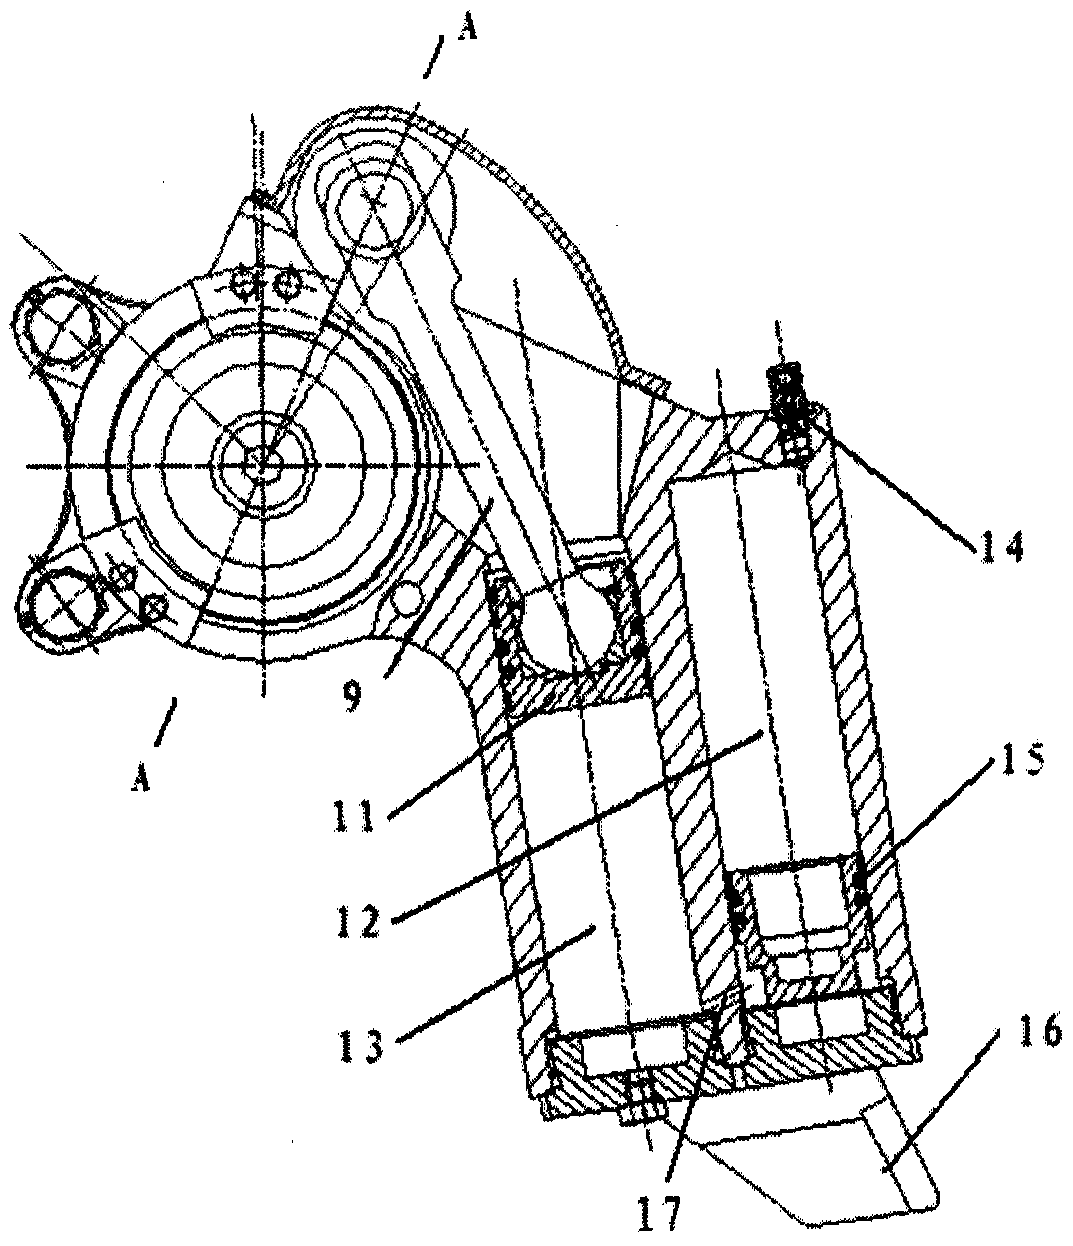 Composite Elbow Type Hydro-pneumatic Suspension